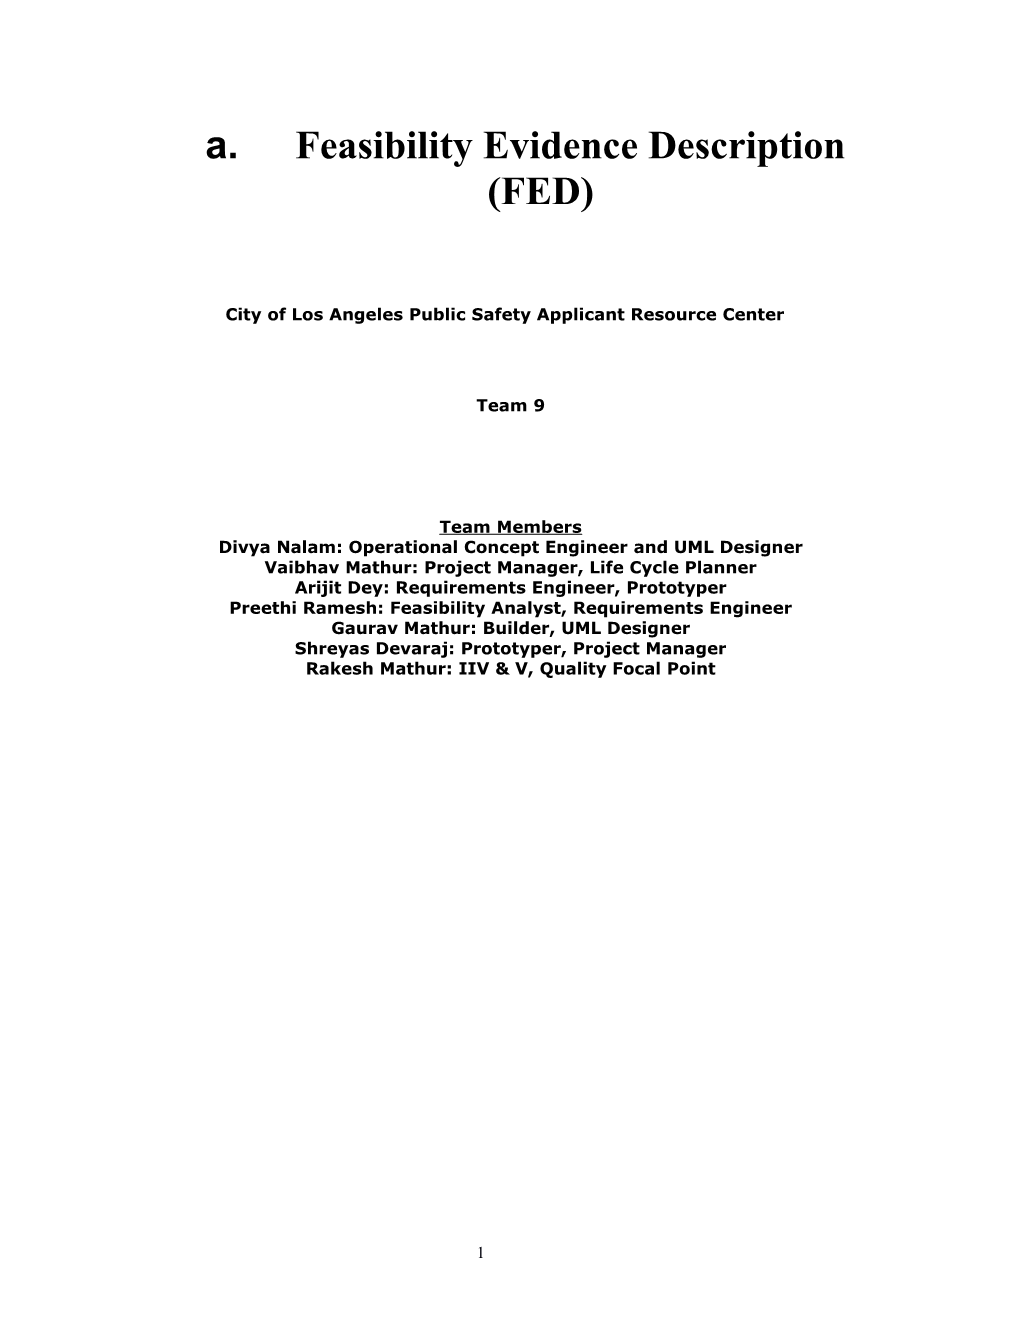 Feasibility Evidence Description (FED)